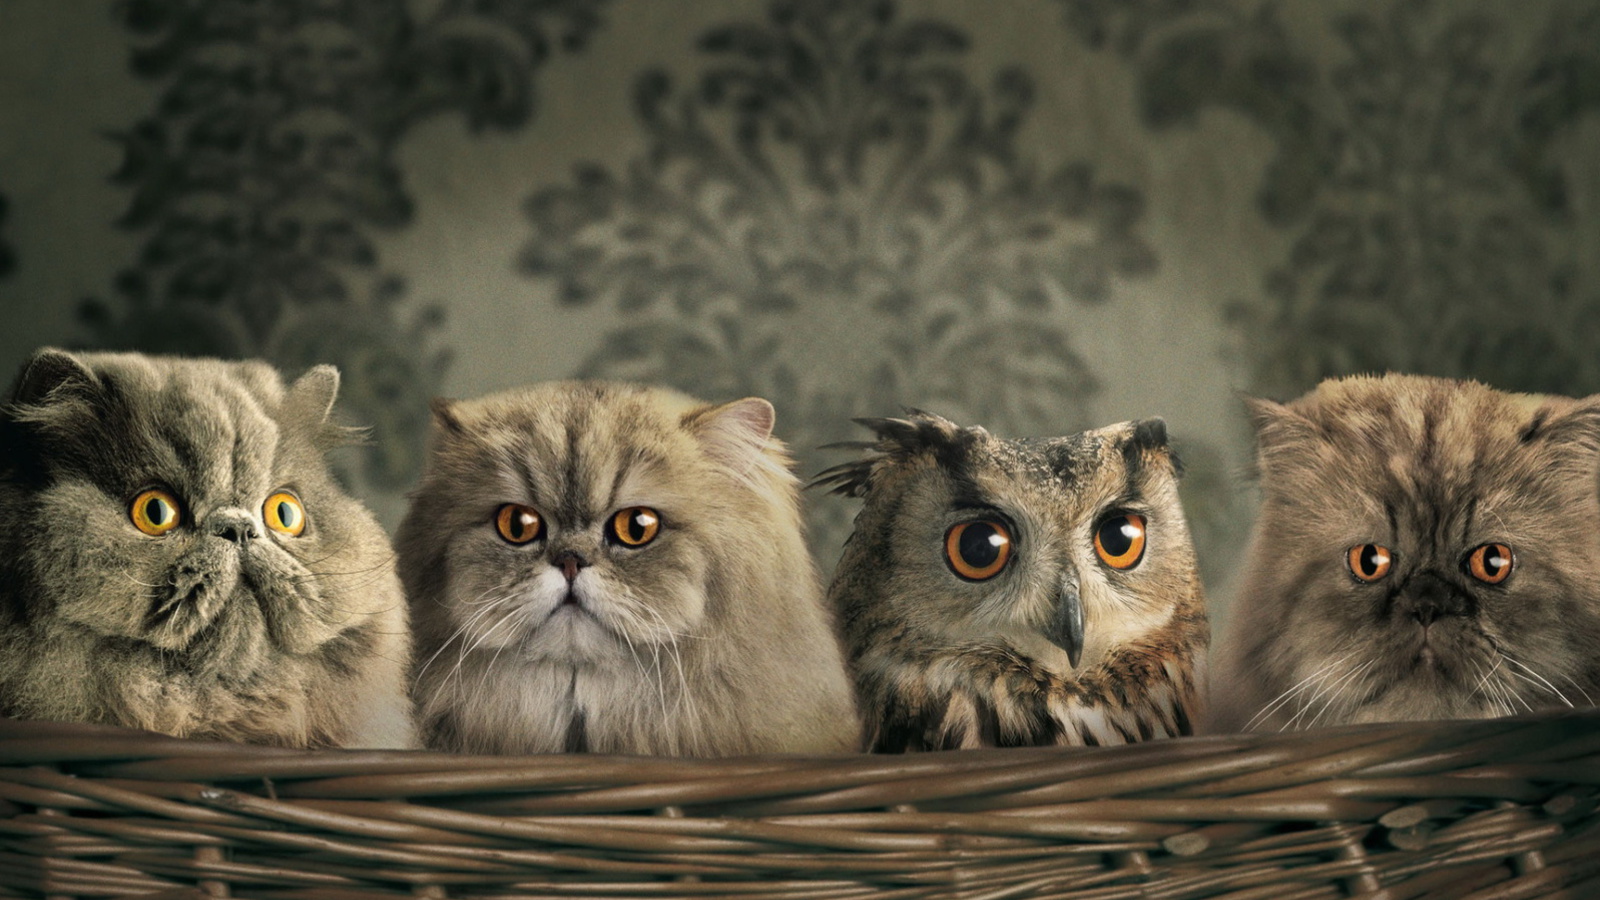 Fondo de pantalla Cats and Owl as Third Wheel 1600x900